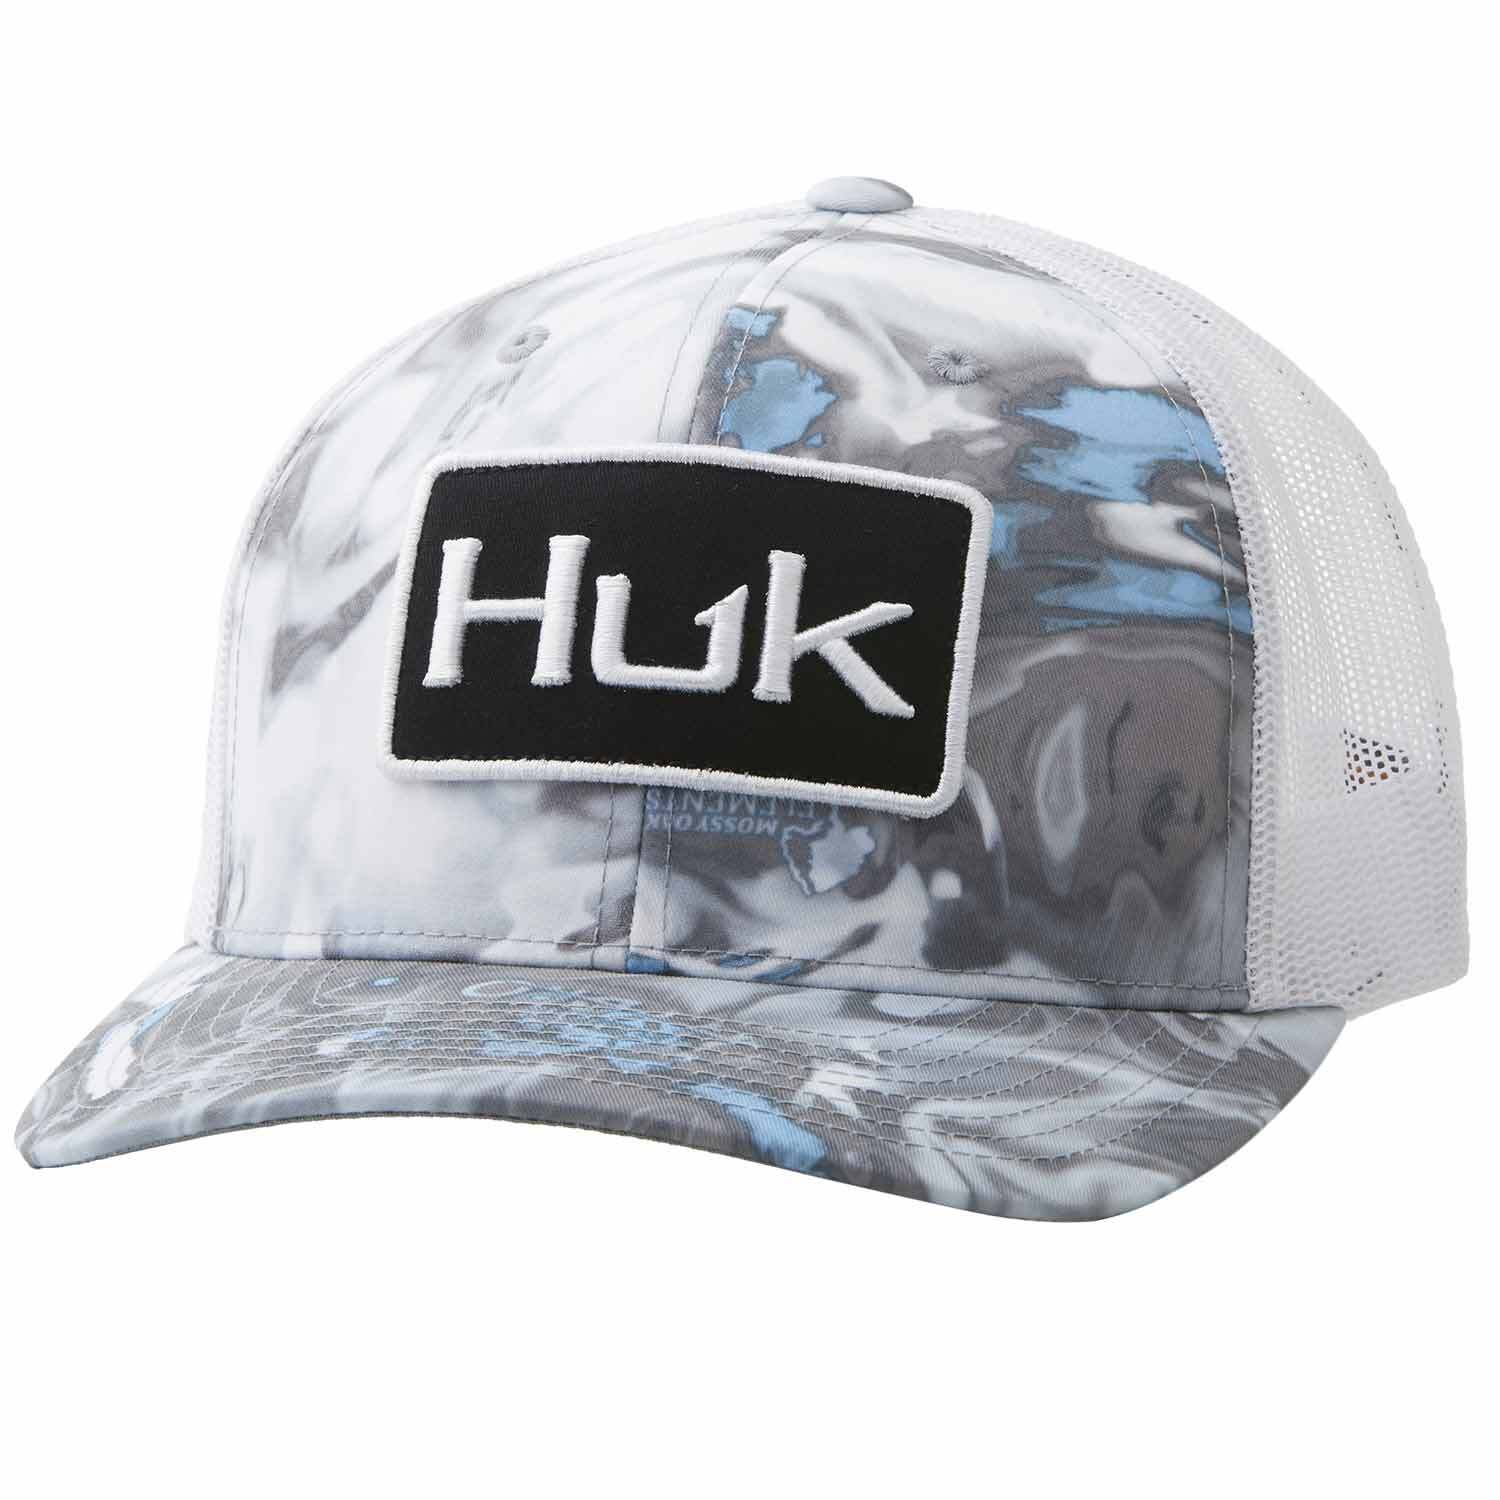 HUK Huk Mossy Oak Angler Trucker Hat